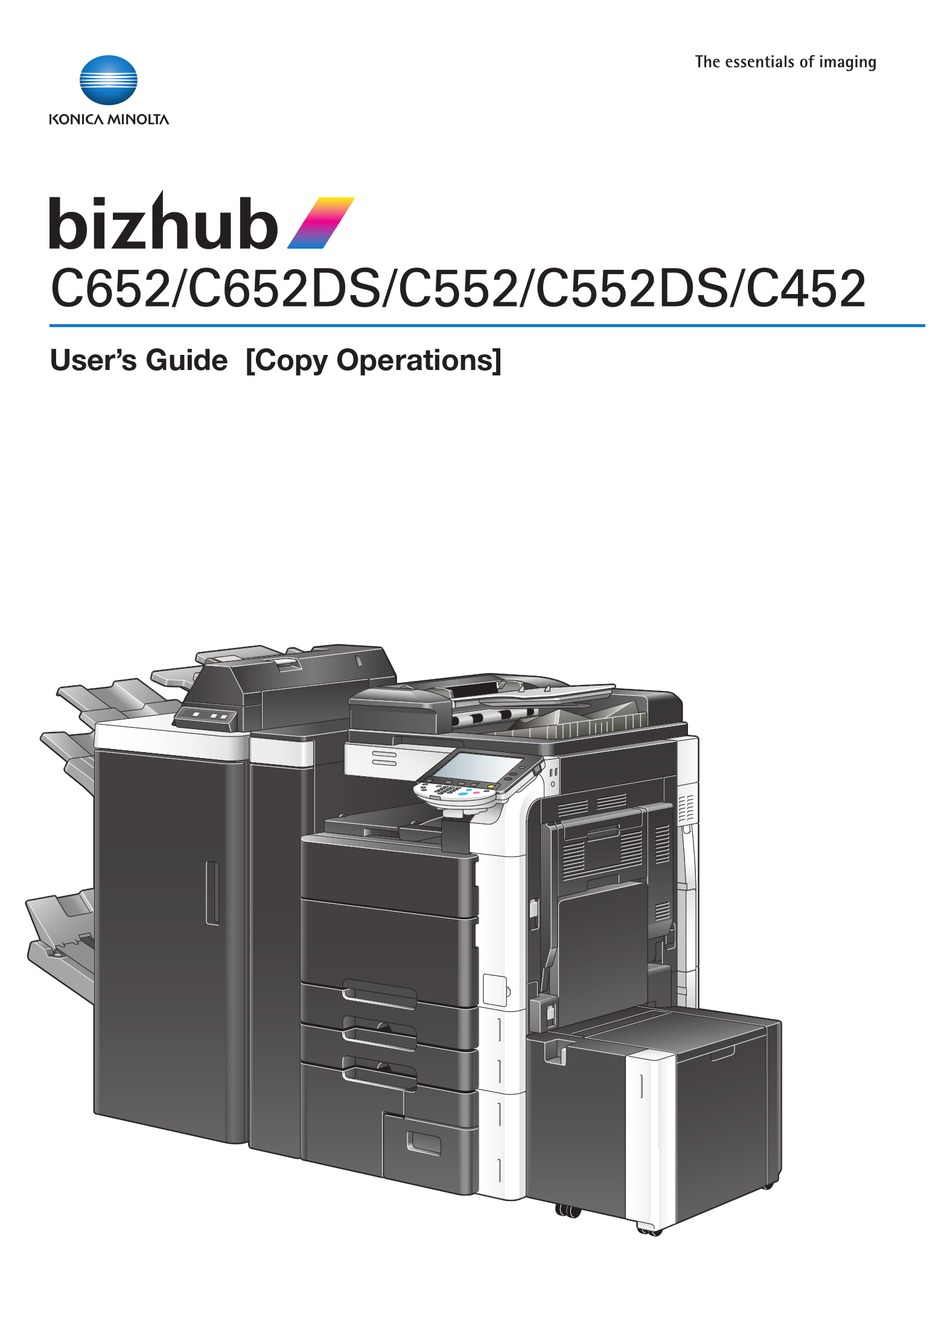 bizhub c652 imaging unit